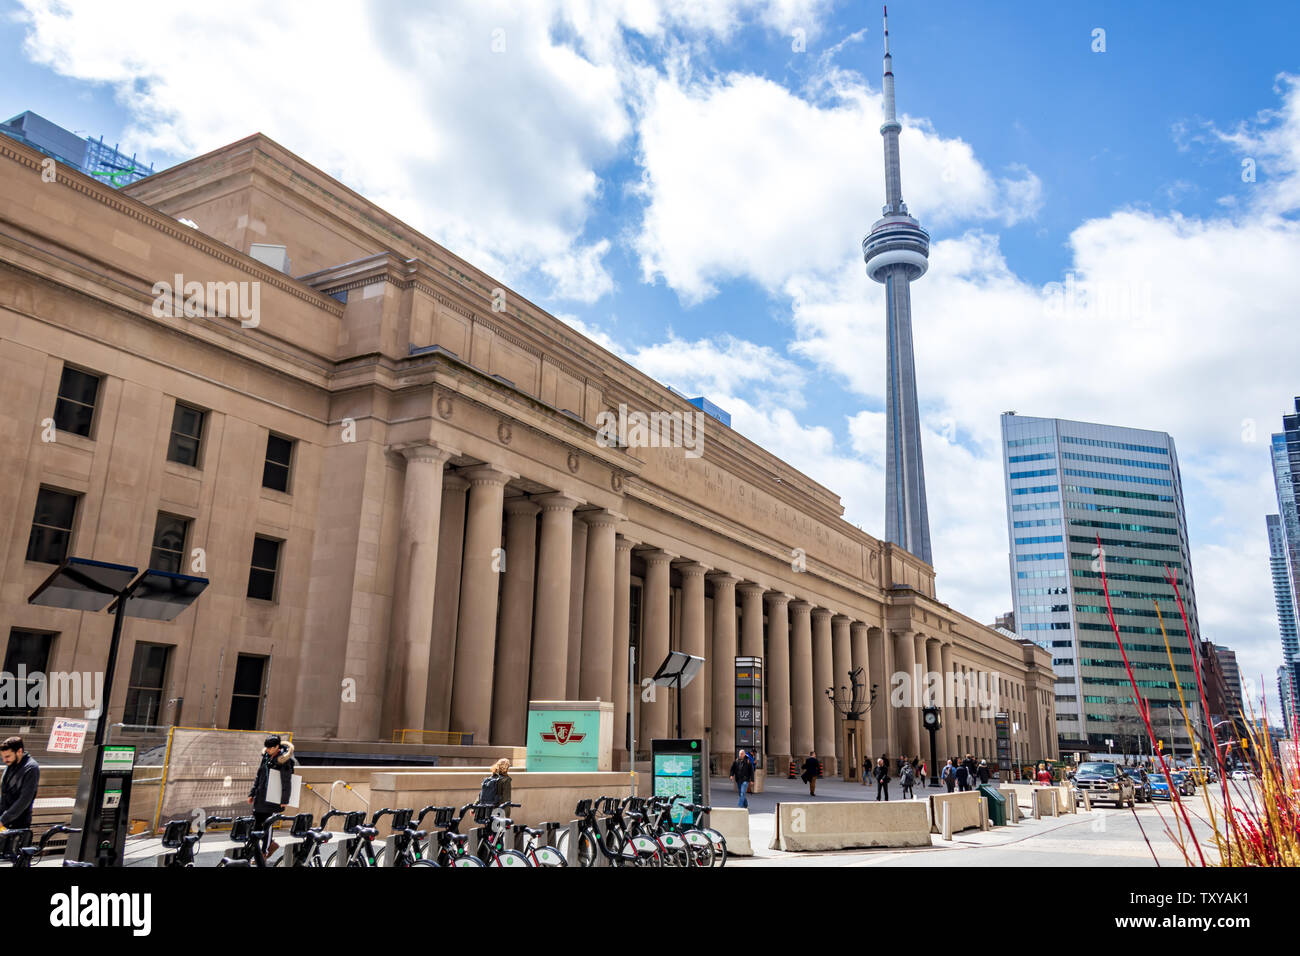 Stazione di unione con la CN Tower in background su un occupato per i giorni feriali. Foto Stock